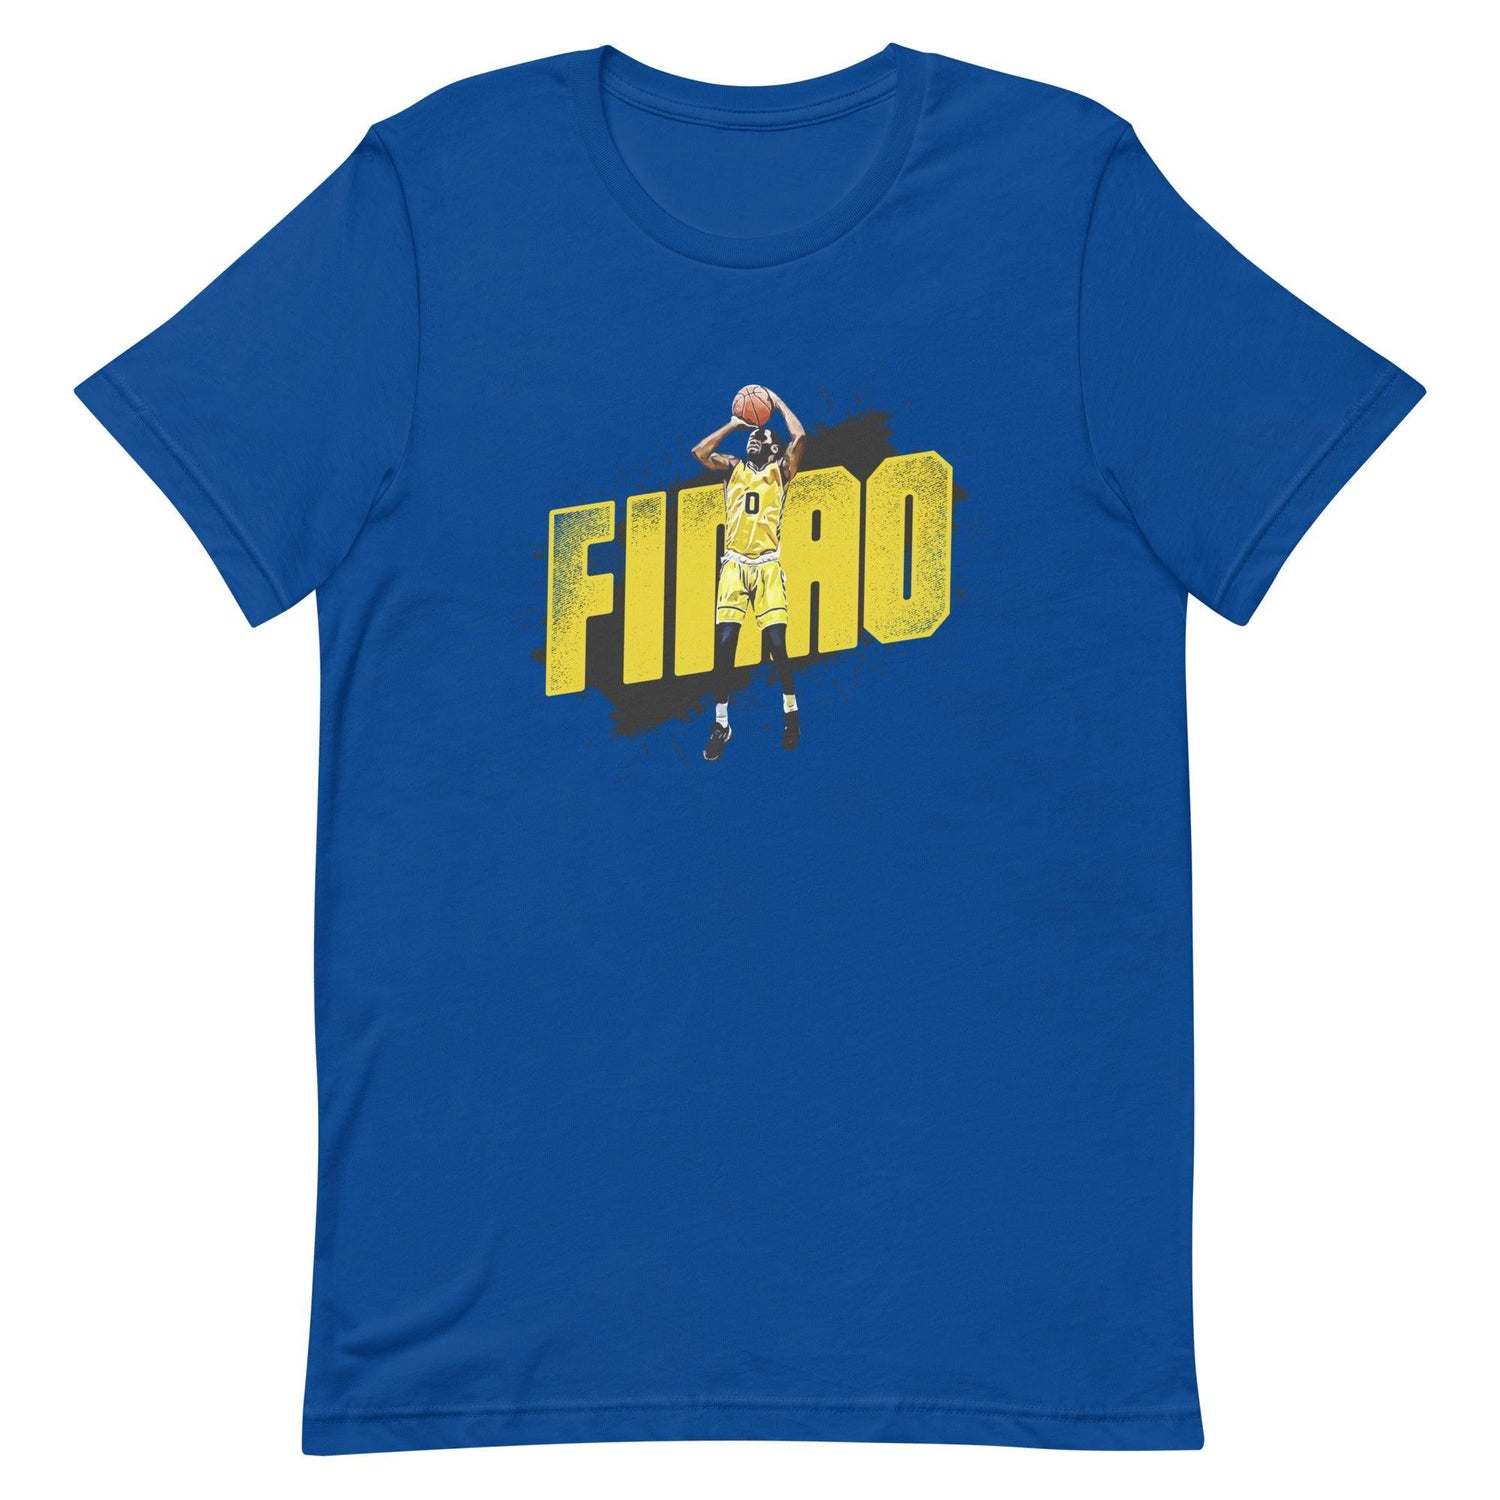 Jaylon Tate "FINAO" t-shirt - Fan Arch